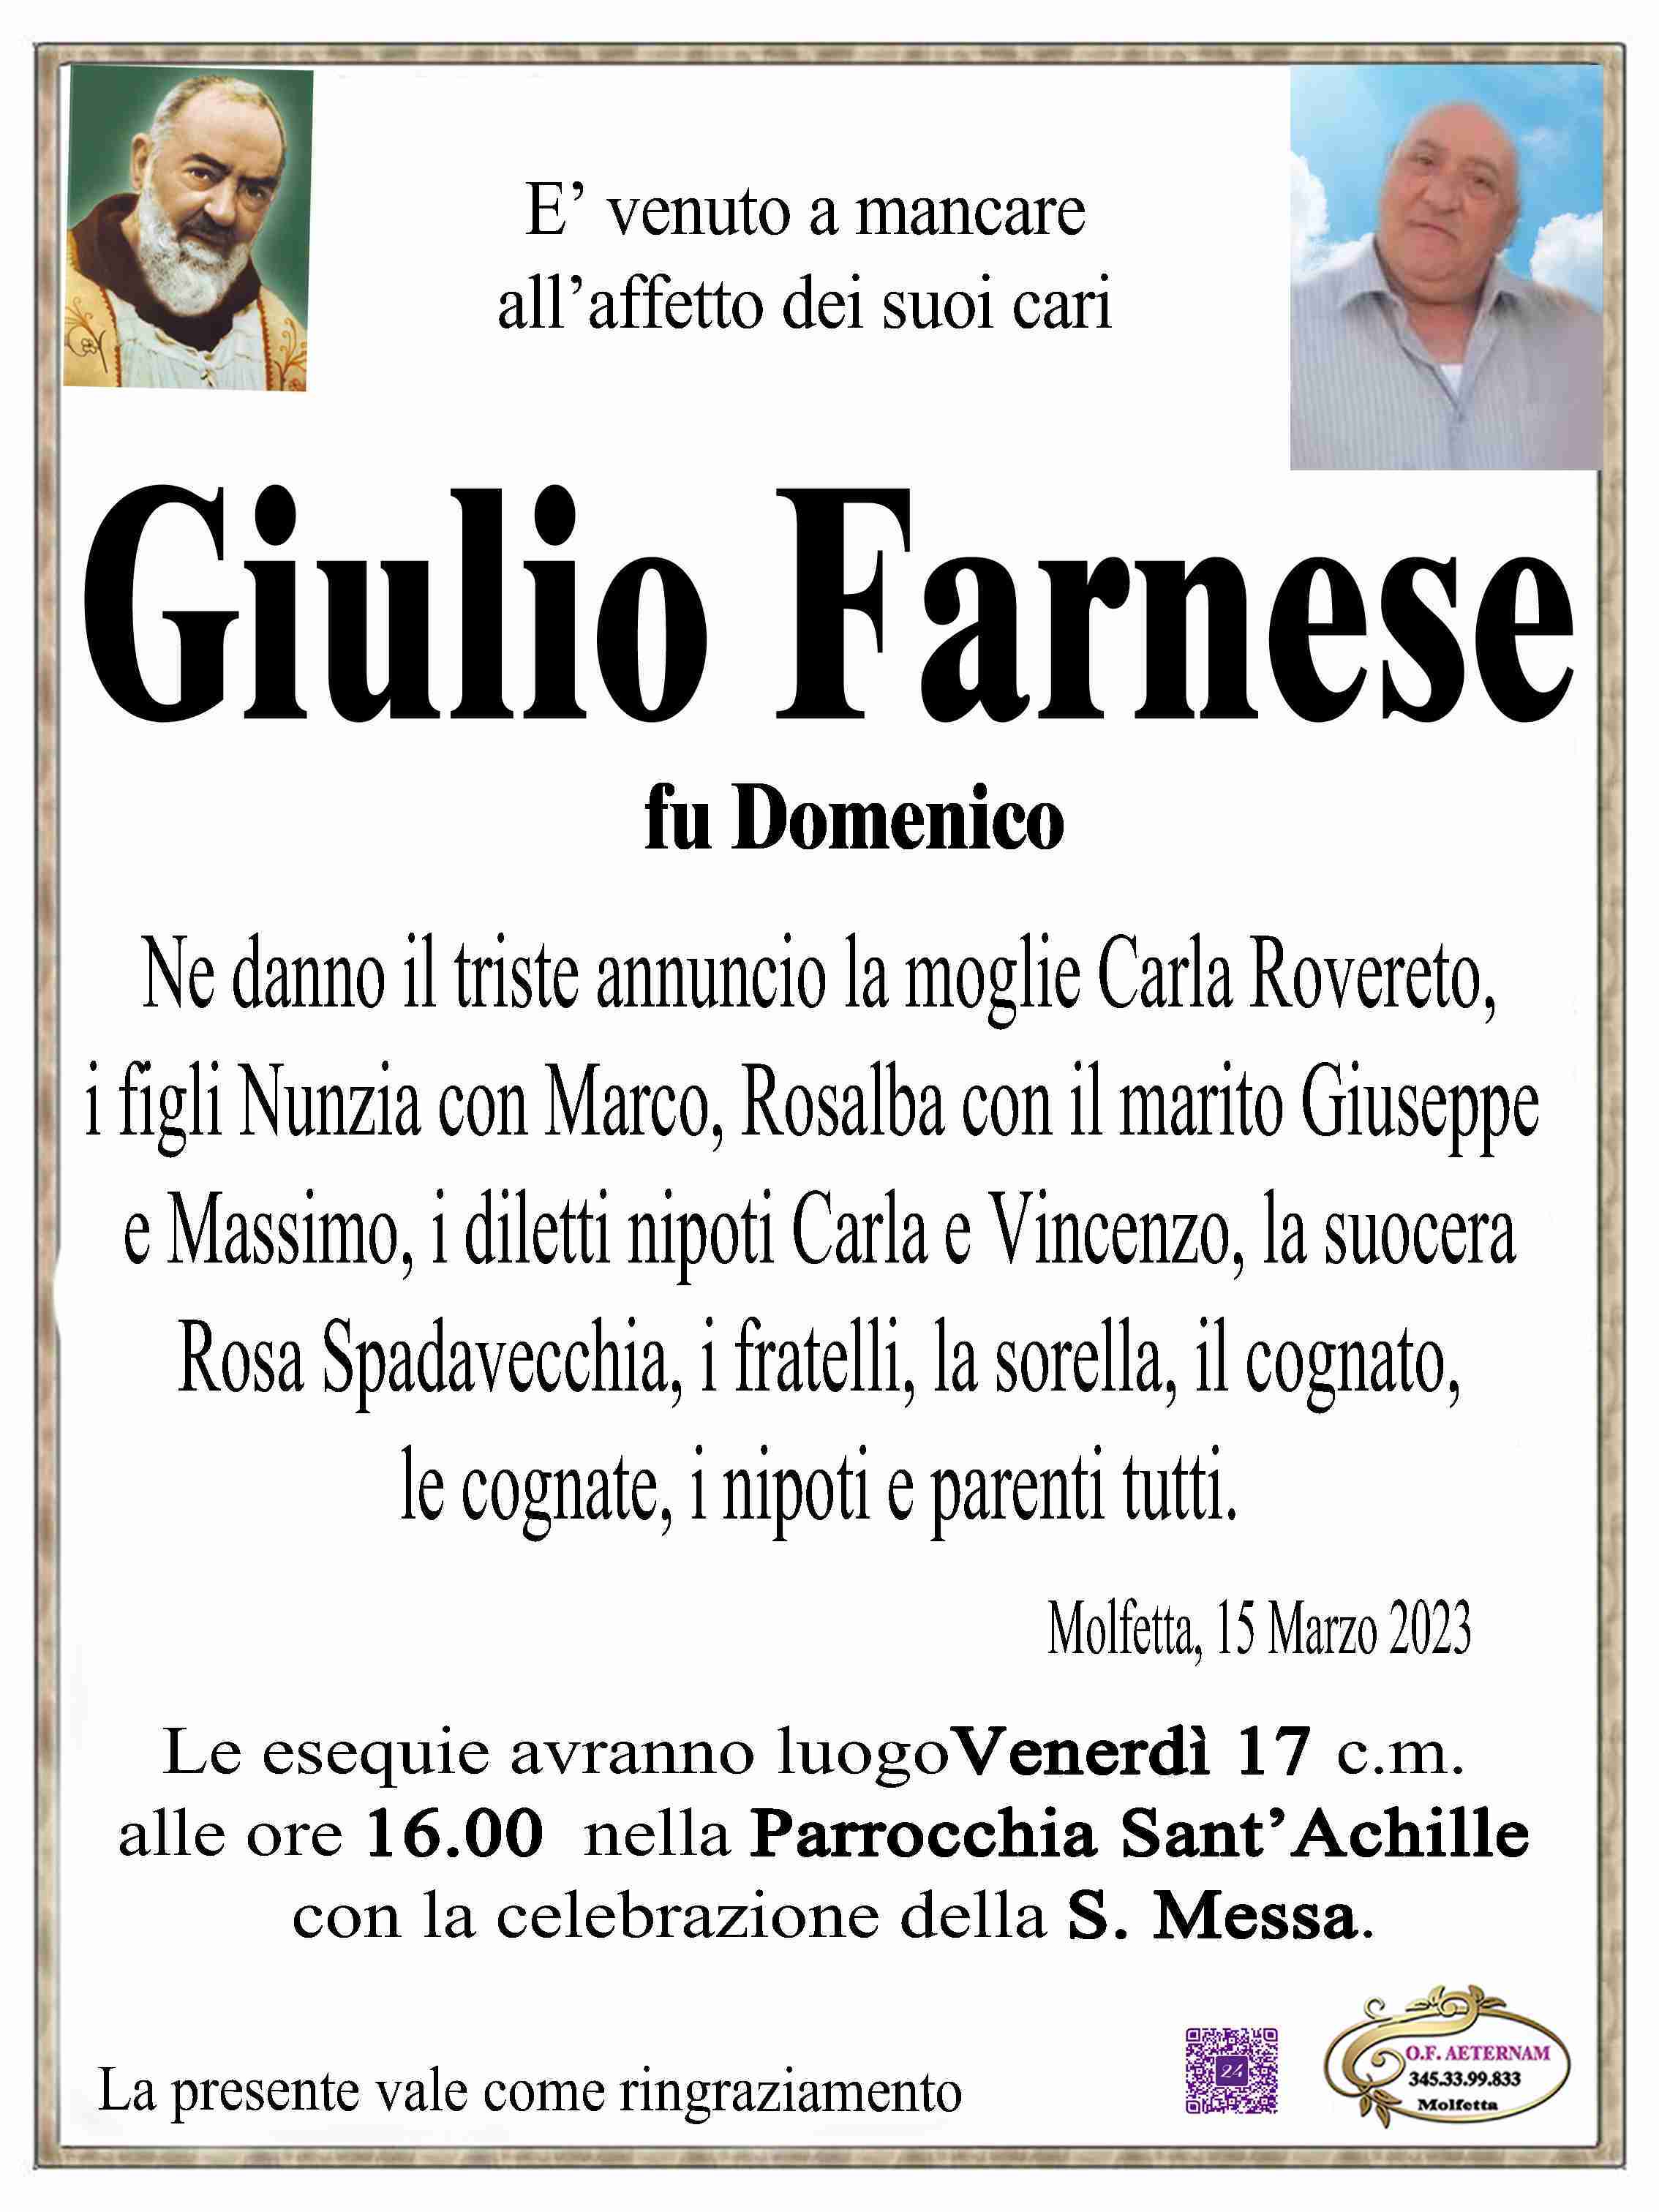 Giulio Farnese